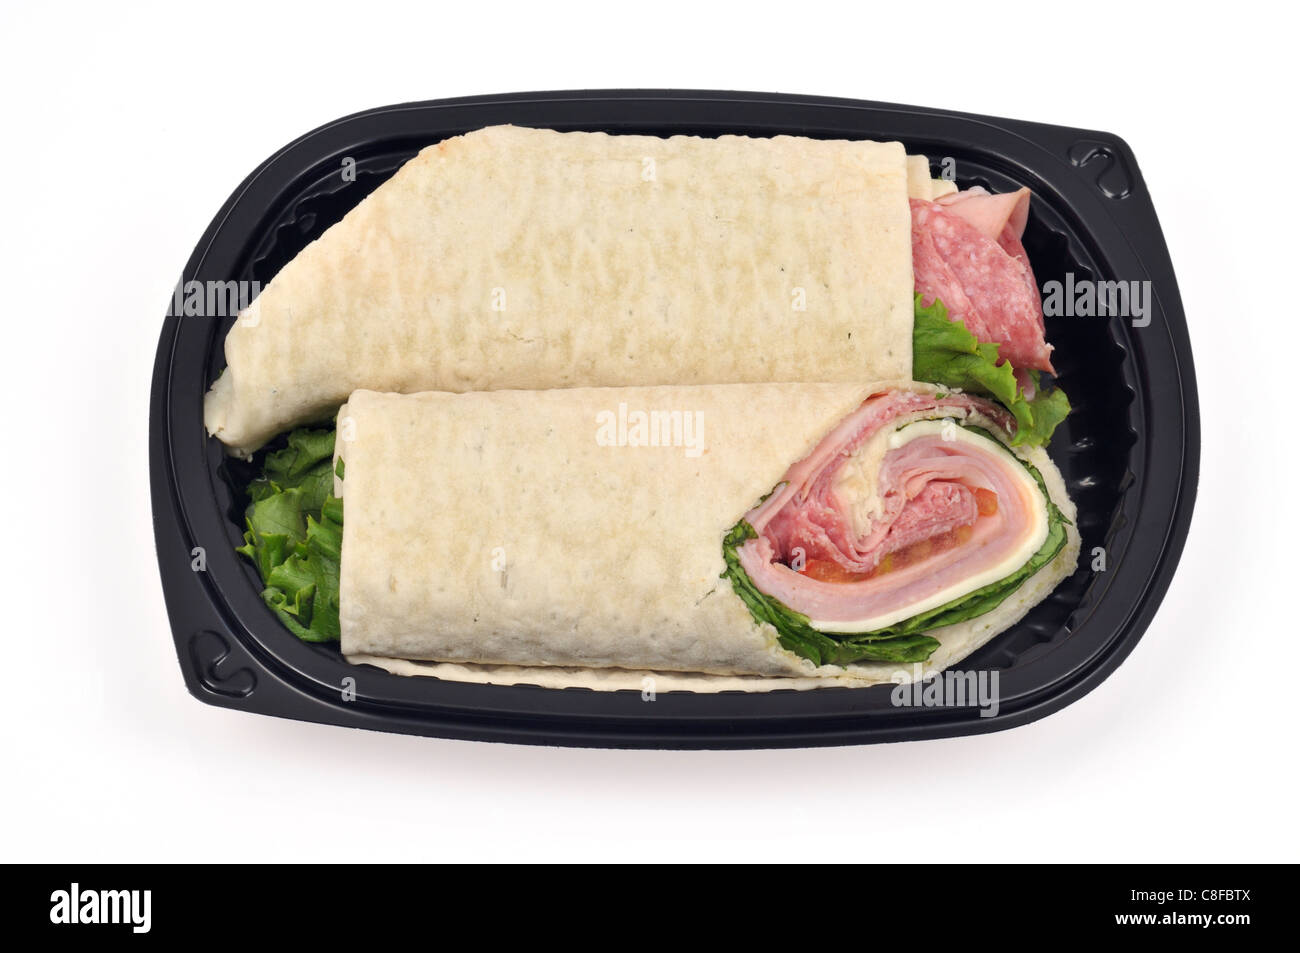 Italian deli avvolgere carni o roll-up sandwich con insalata di formaggio & tomatoin nero per andare contenitore su sfondo bianco, tagliato fuori. Stati Uniti d'America Foto Stock